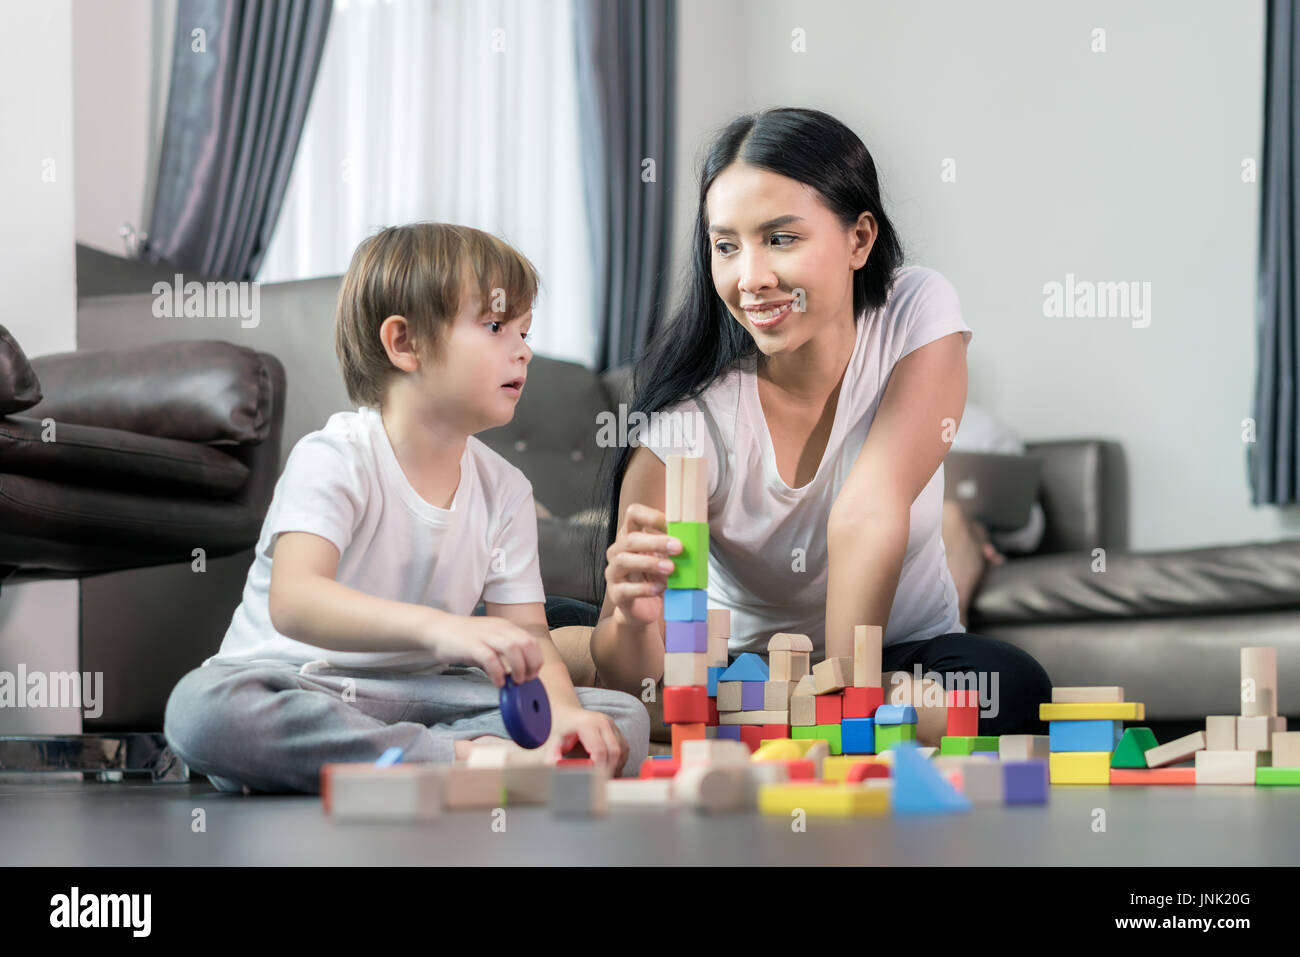 Asiatische junge und Mutter Holz Spielzeug im Wohnzimmer spielen. Glückliche Familie. Stockfoto